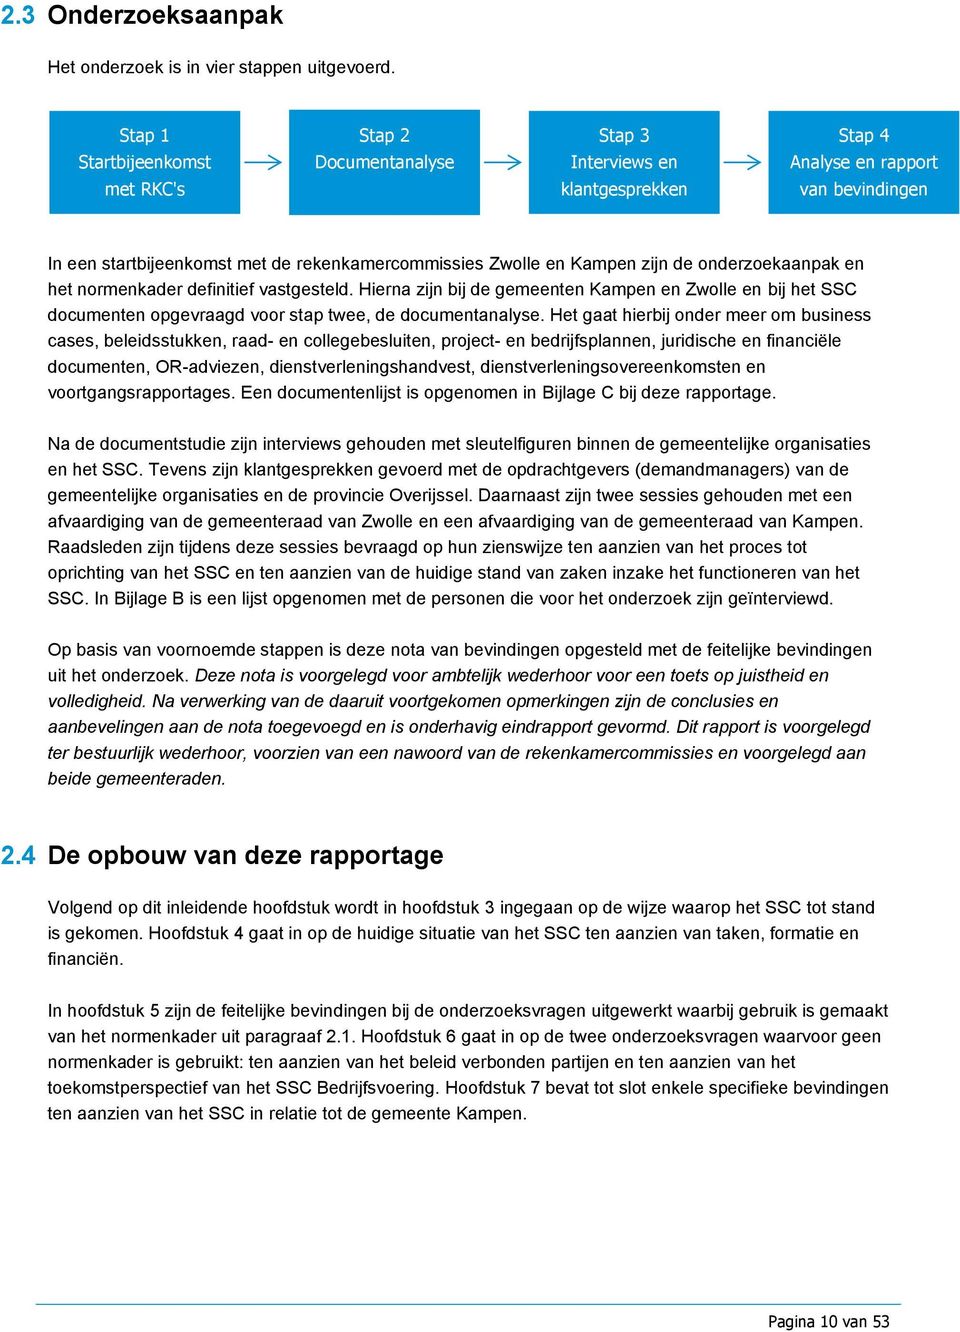 Kampen zijn de onderzoekaanpak en het normenkader definitief vastgesteld. Hierna zijn bij de gemeenten Kampen en Zwolle en bij het SSC documenten opgevraagd voor stap twee, de documentanalyse.